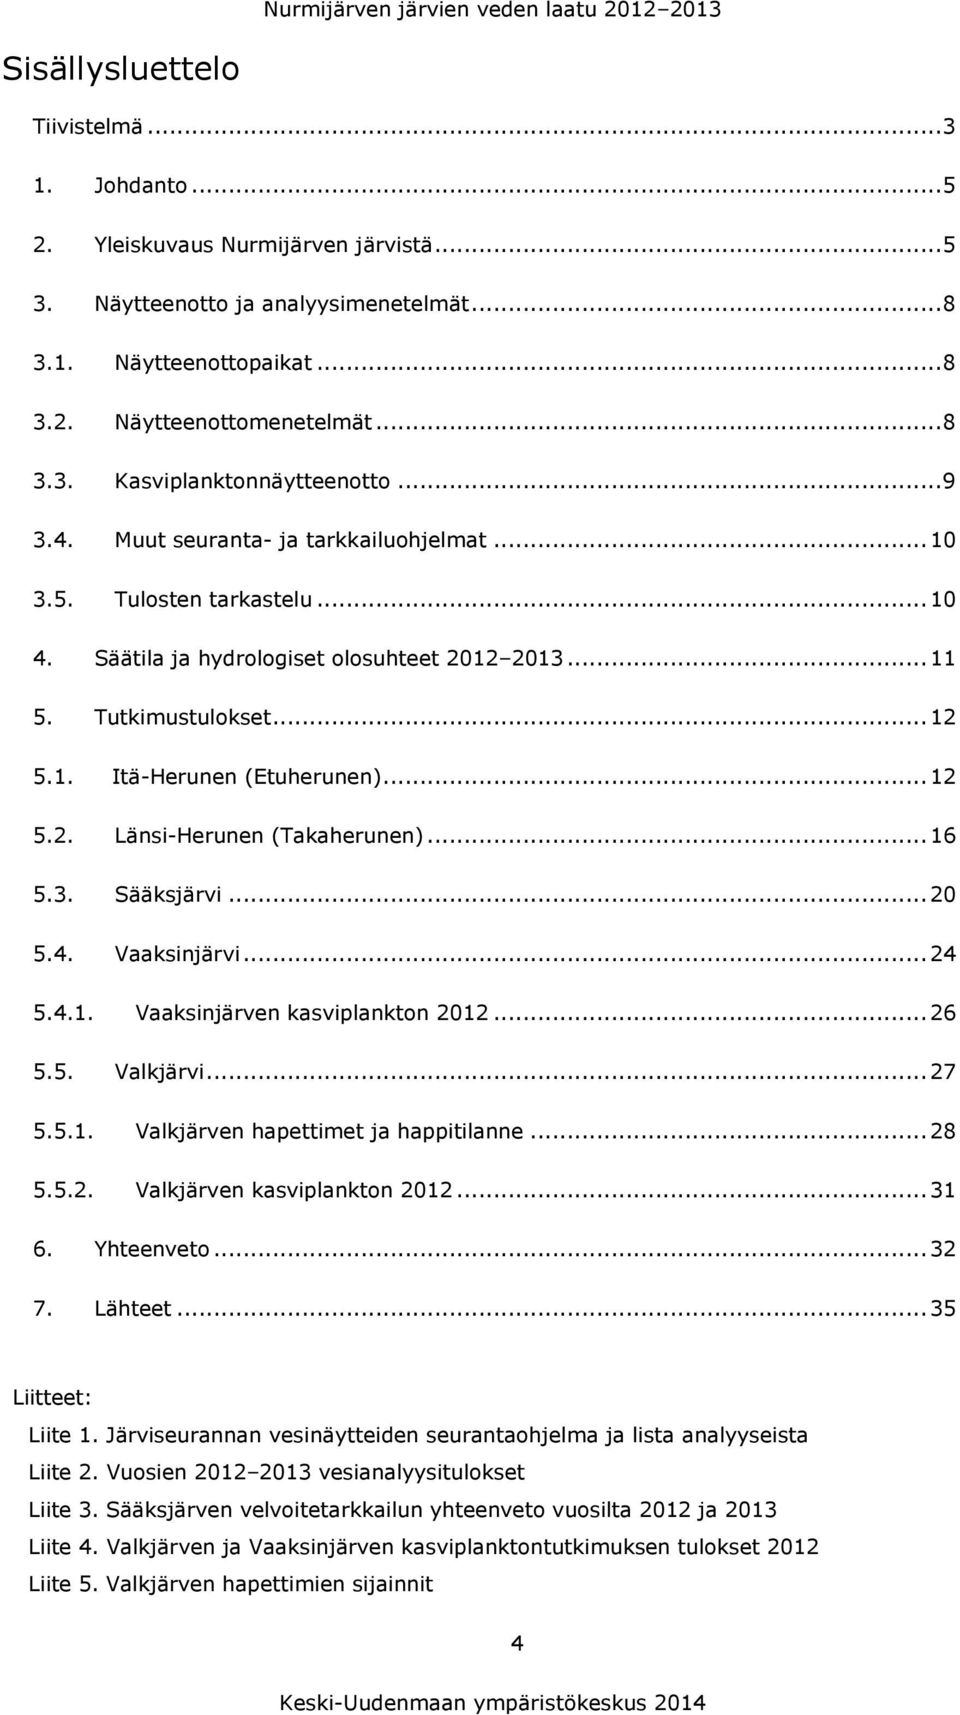 .. 11 5. Tutkimustulokset... 12 5.1. Itä-Herunen (Etuherunen)... 12 5.2. Länsi-Herunen (Takaherunen)... 16 5.3. Sääksjärvi... 20 5.4. Vaaksinjärvi... 24 5.4.1. Vaaksinjärven kasviplankton 2012... 26 5.